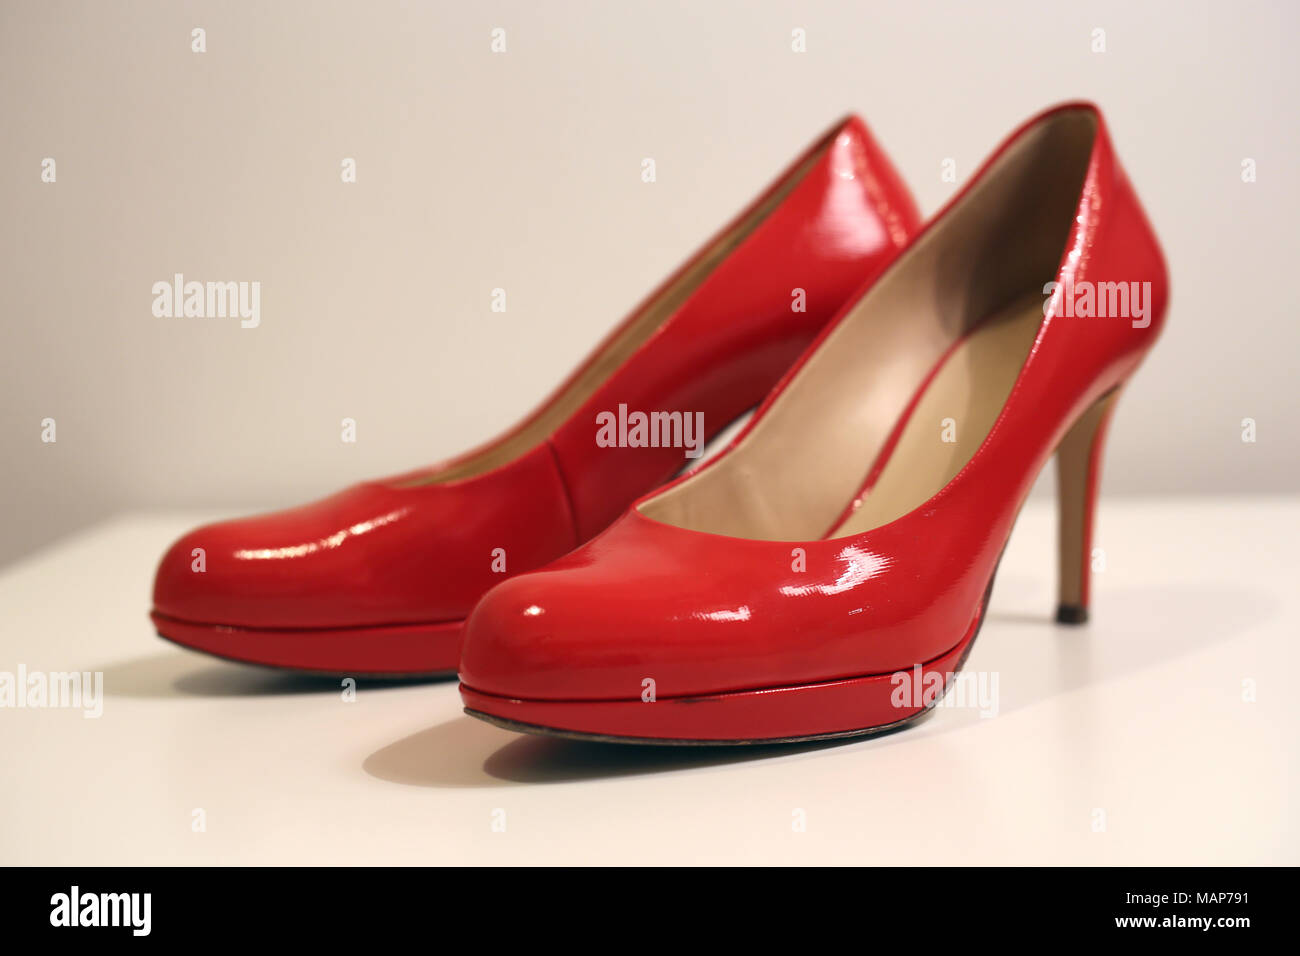 Un stil la vita di un paio di tacchi alti su un tavolo bianco. Le scarpe sono di colore rosso in pelle lucida scarpe e lo sfondo è bianco. Foto Stock